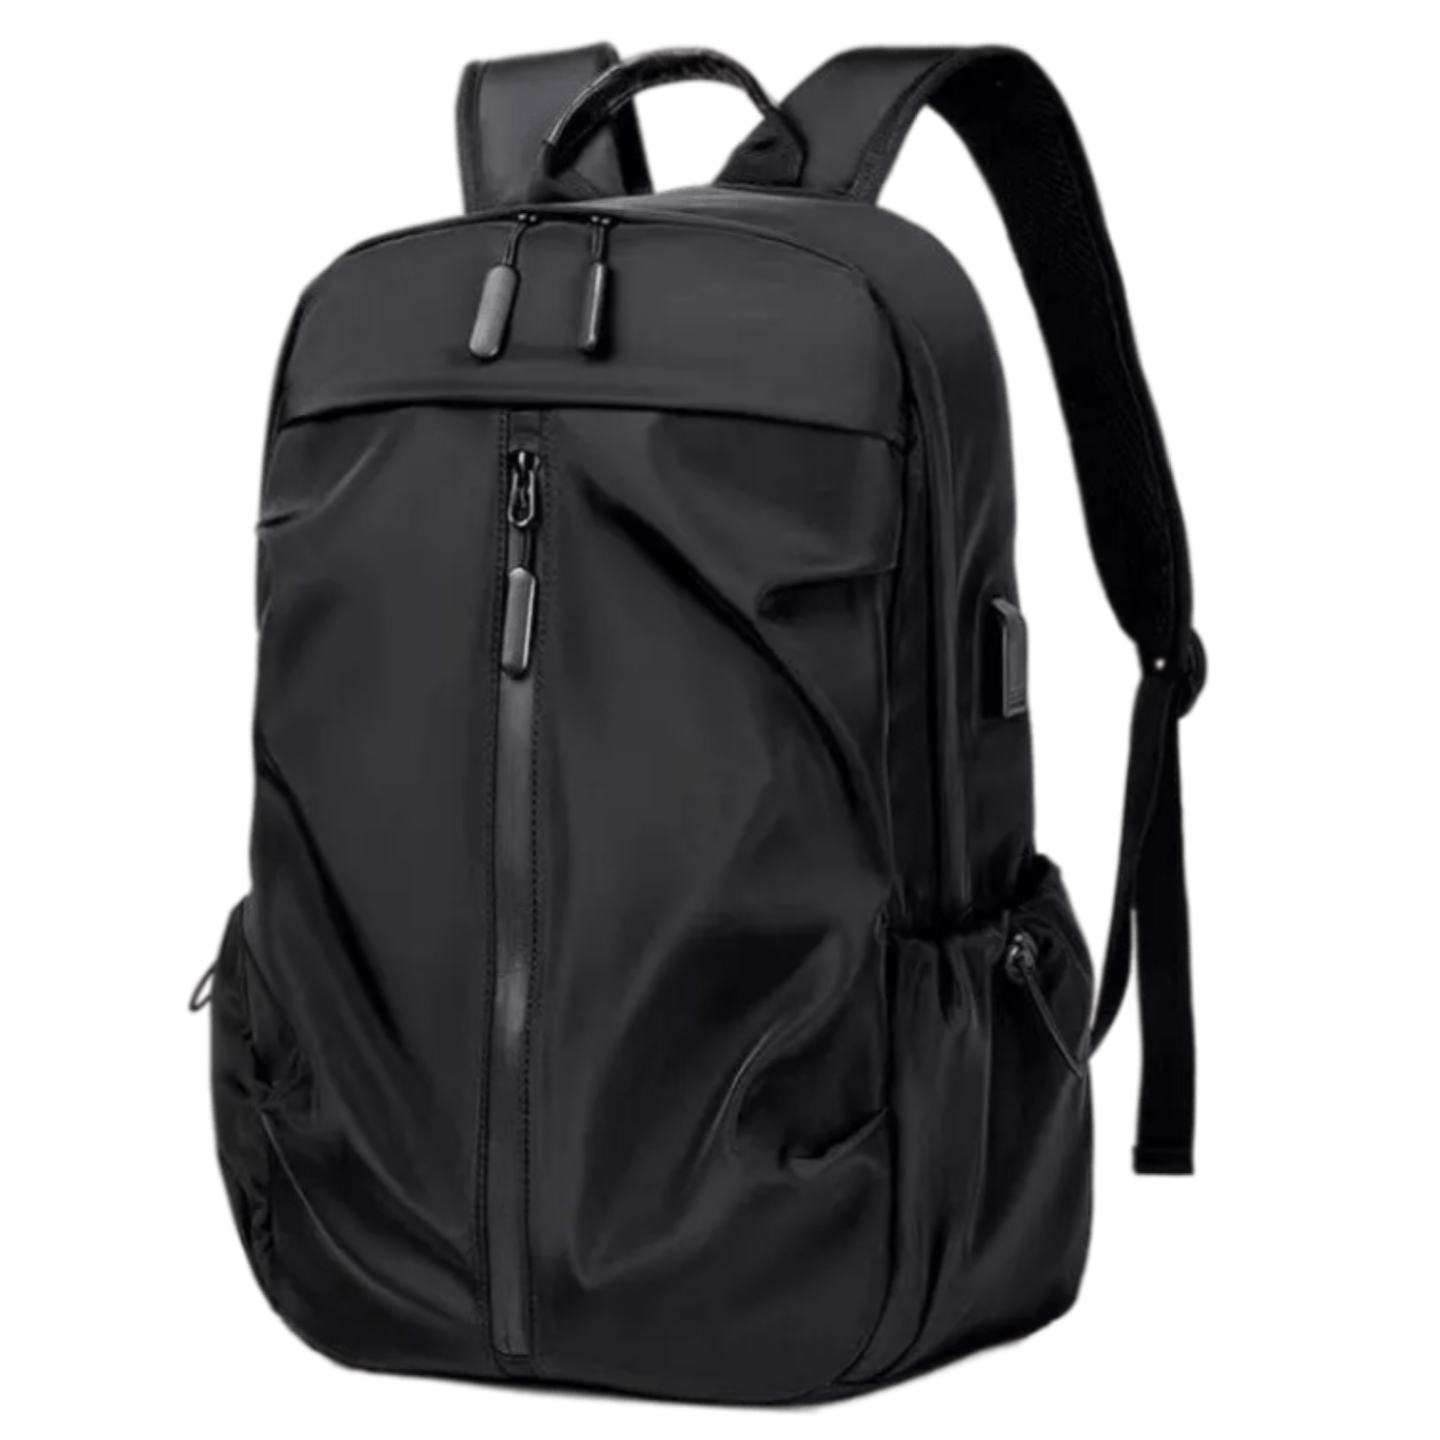 Рюкзак мужской Lavrika BPUSB черный, 45x32x2 см